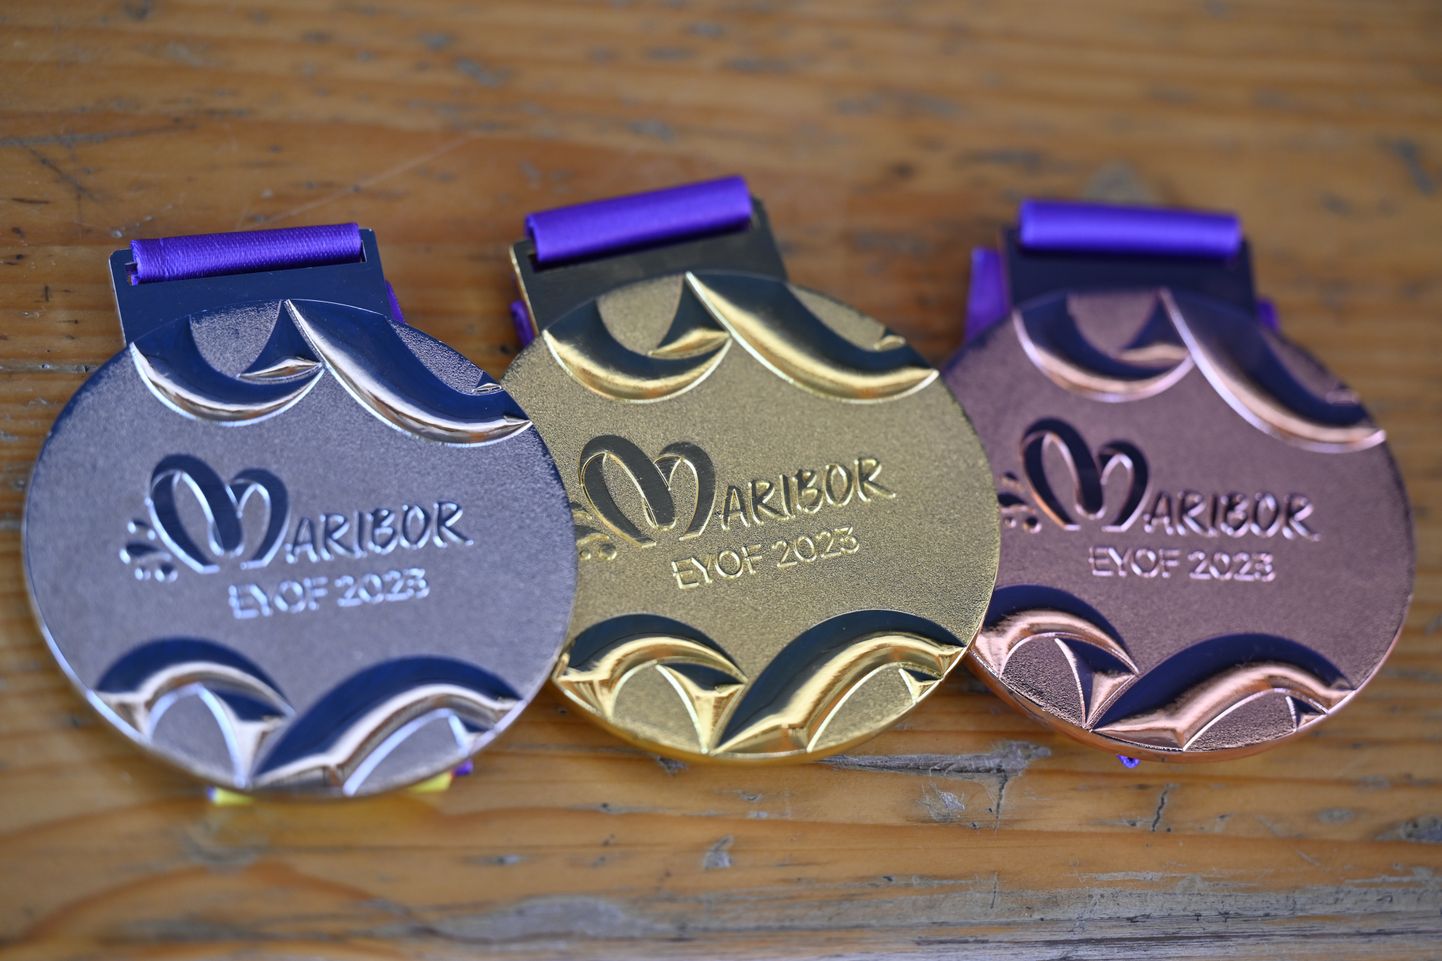 На фото изображены серебряная, золотая и бронзовая медали в толкании ядра в последний день Европейского юношеского летнего олимпийского фестиваля 2023 года в Мариборе, Словения.